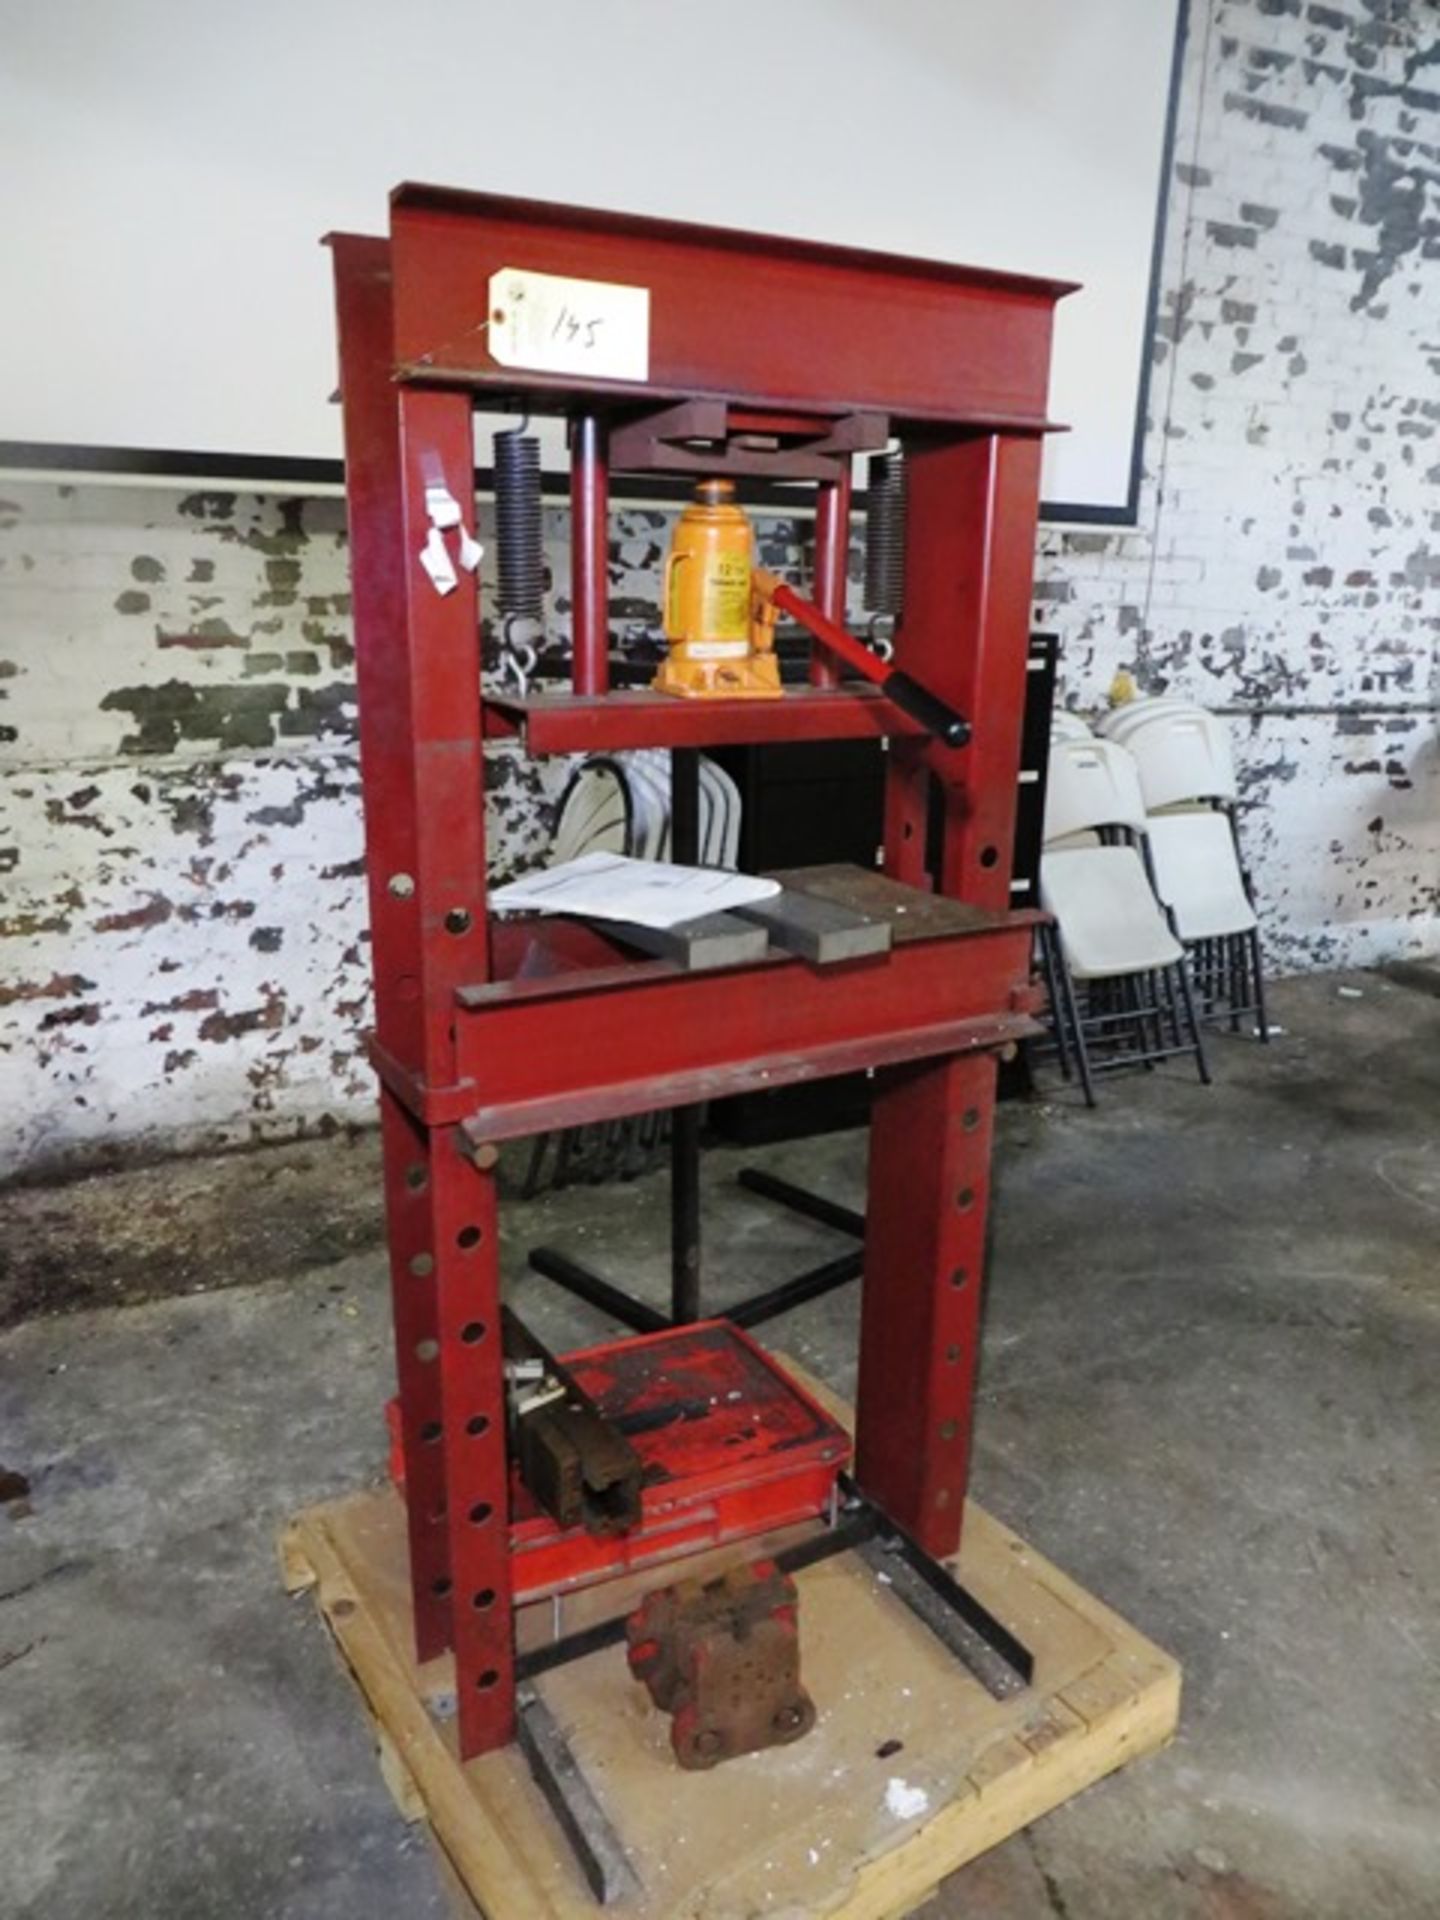 12 Ton H-Frame Hydraulic Shop Press